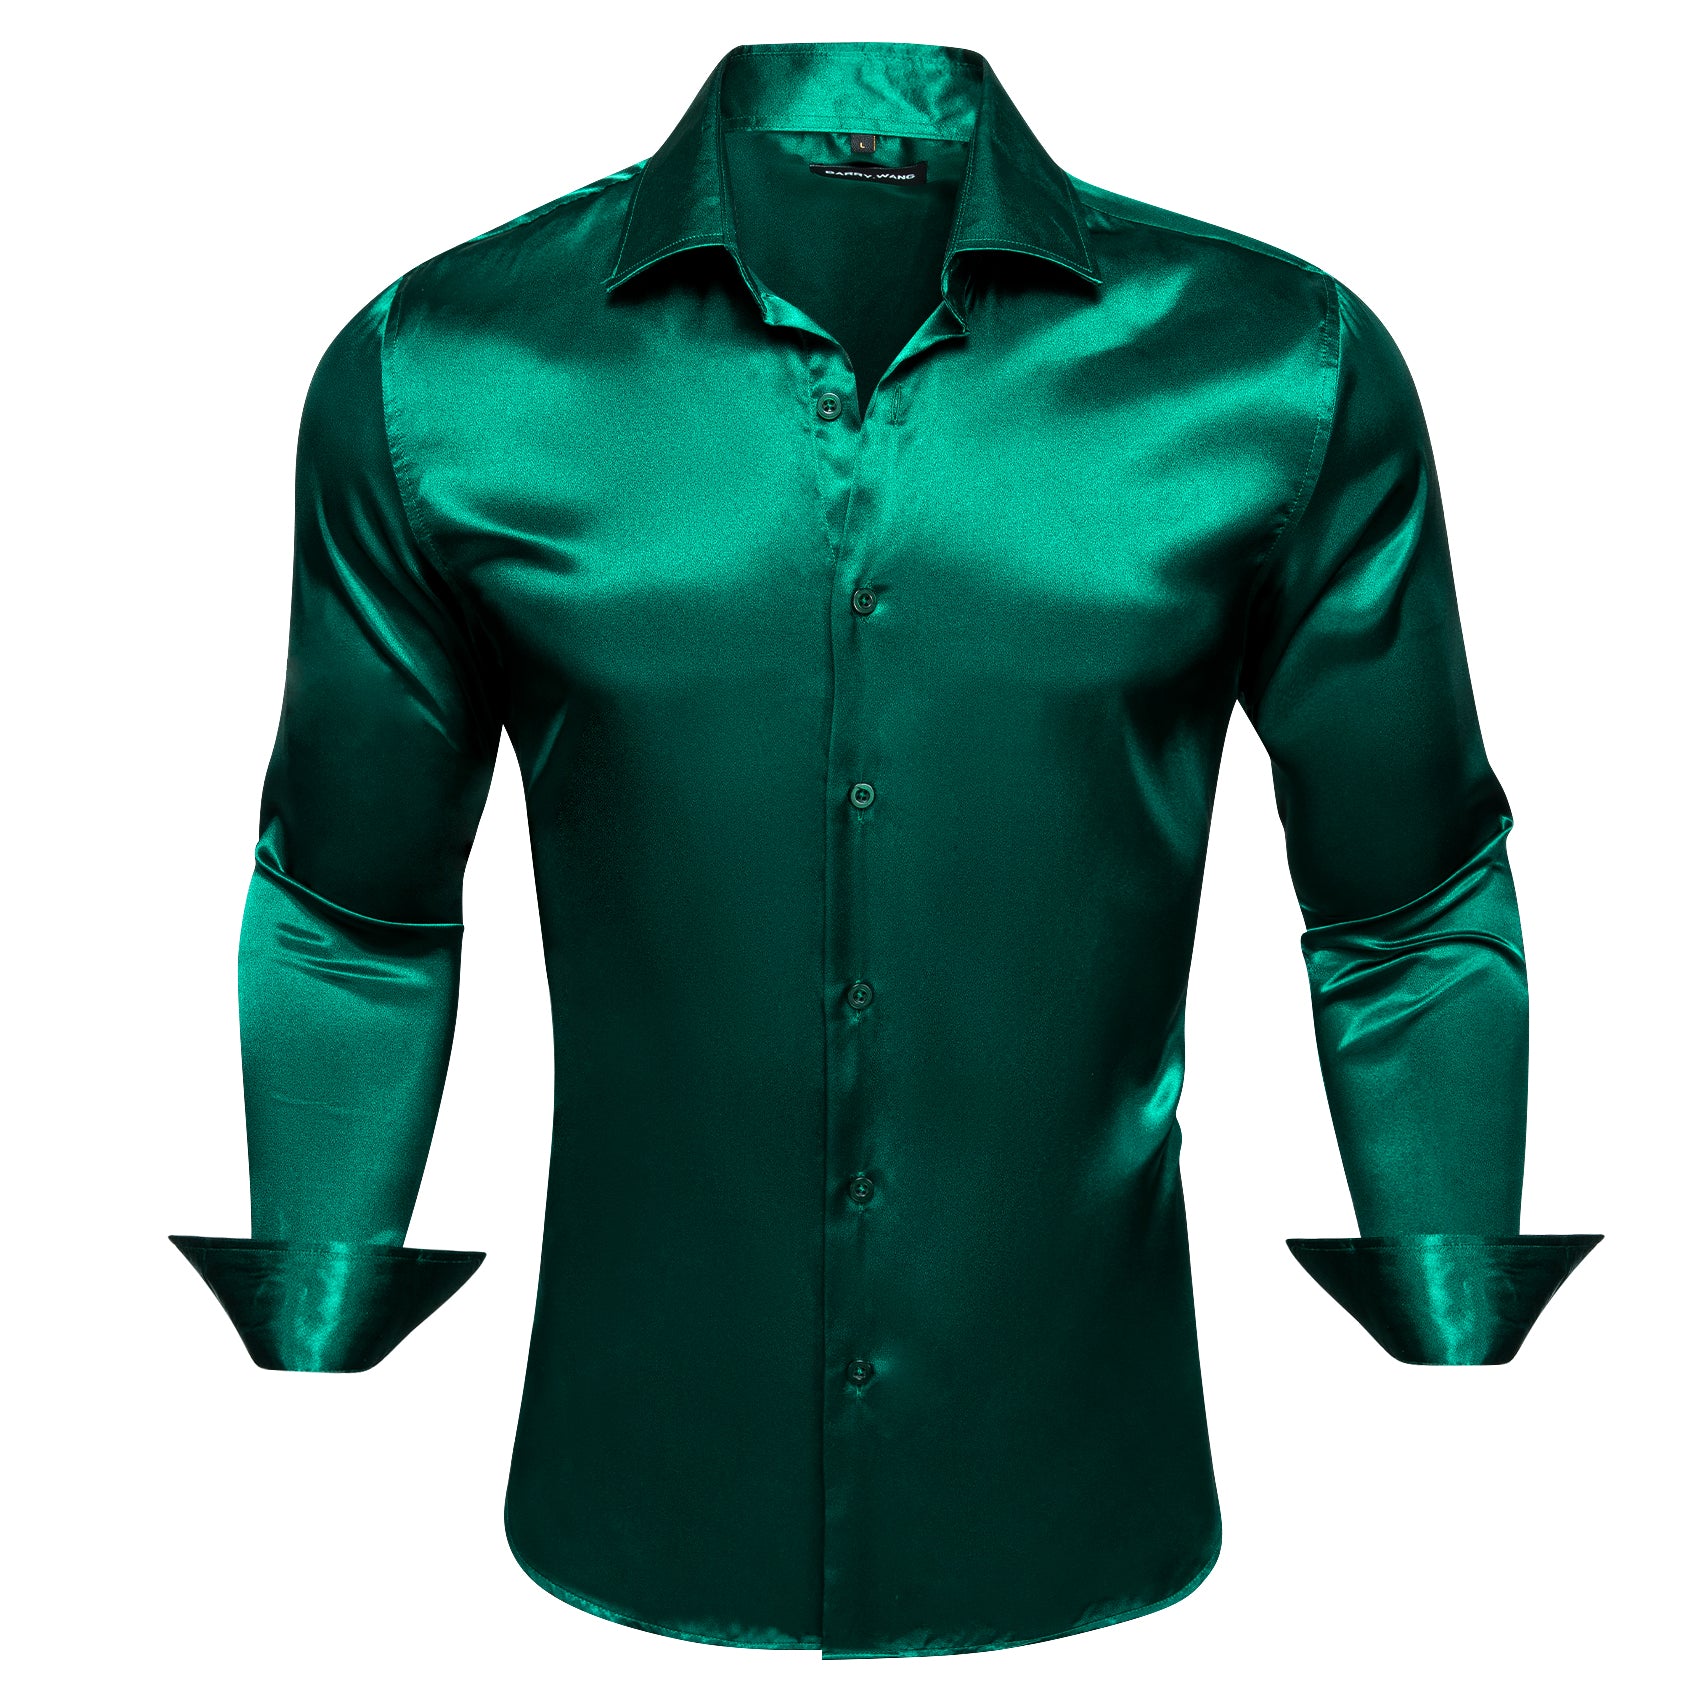 Barry.wang Hot Dark Green Solid Silk Shirt